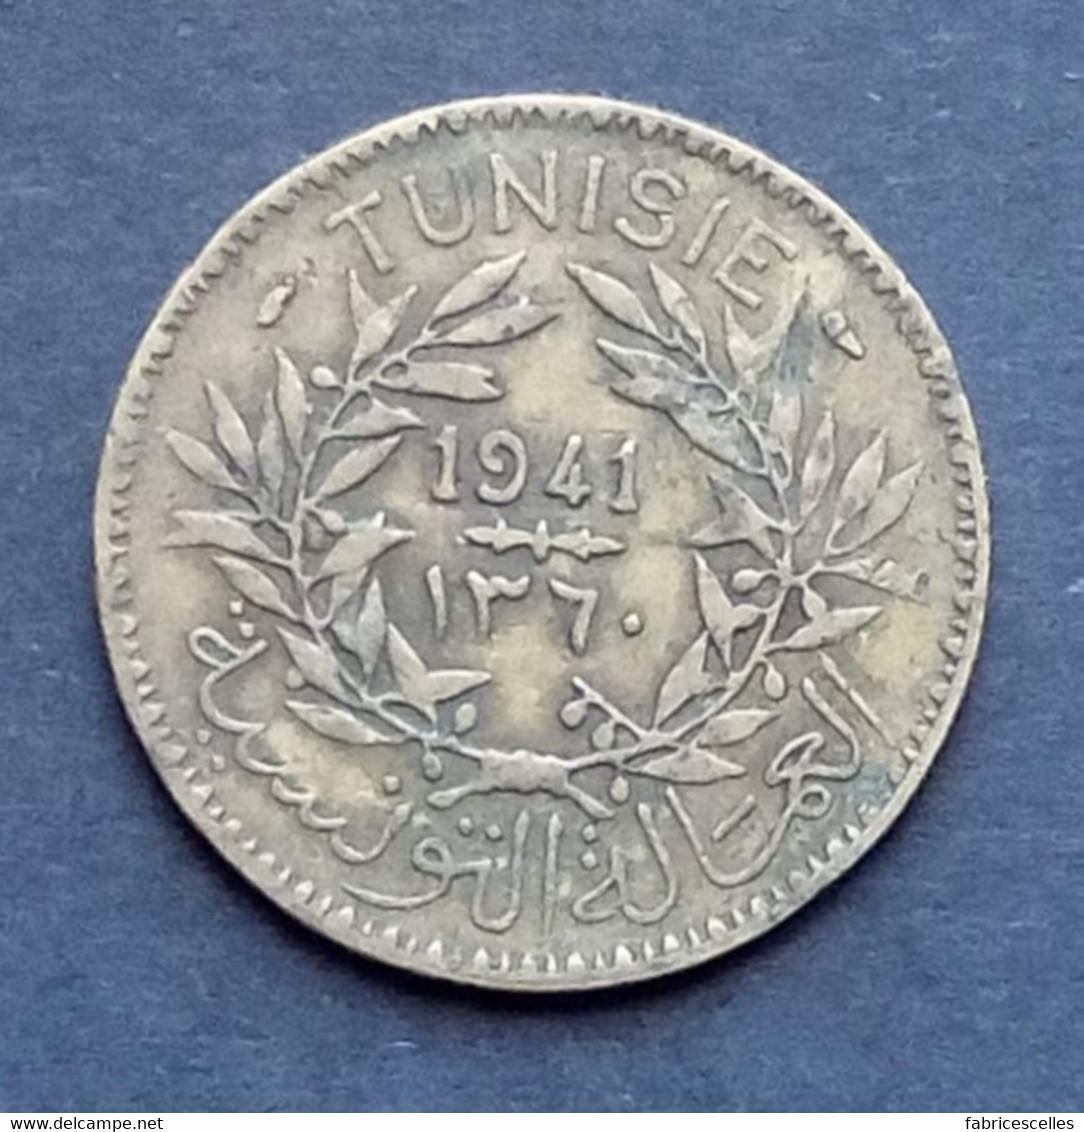 Tunisie - Pièce "Bon Pour 2 Francs" 1941 - Tunisia